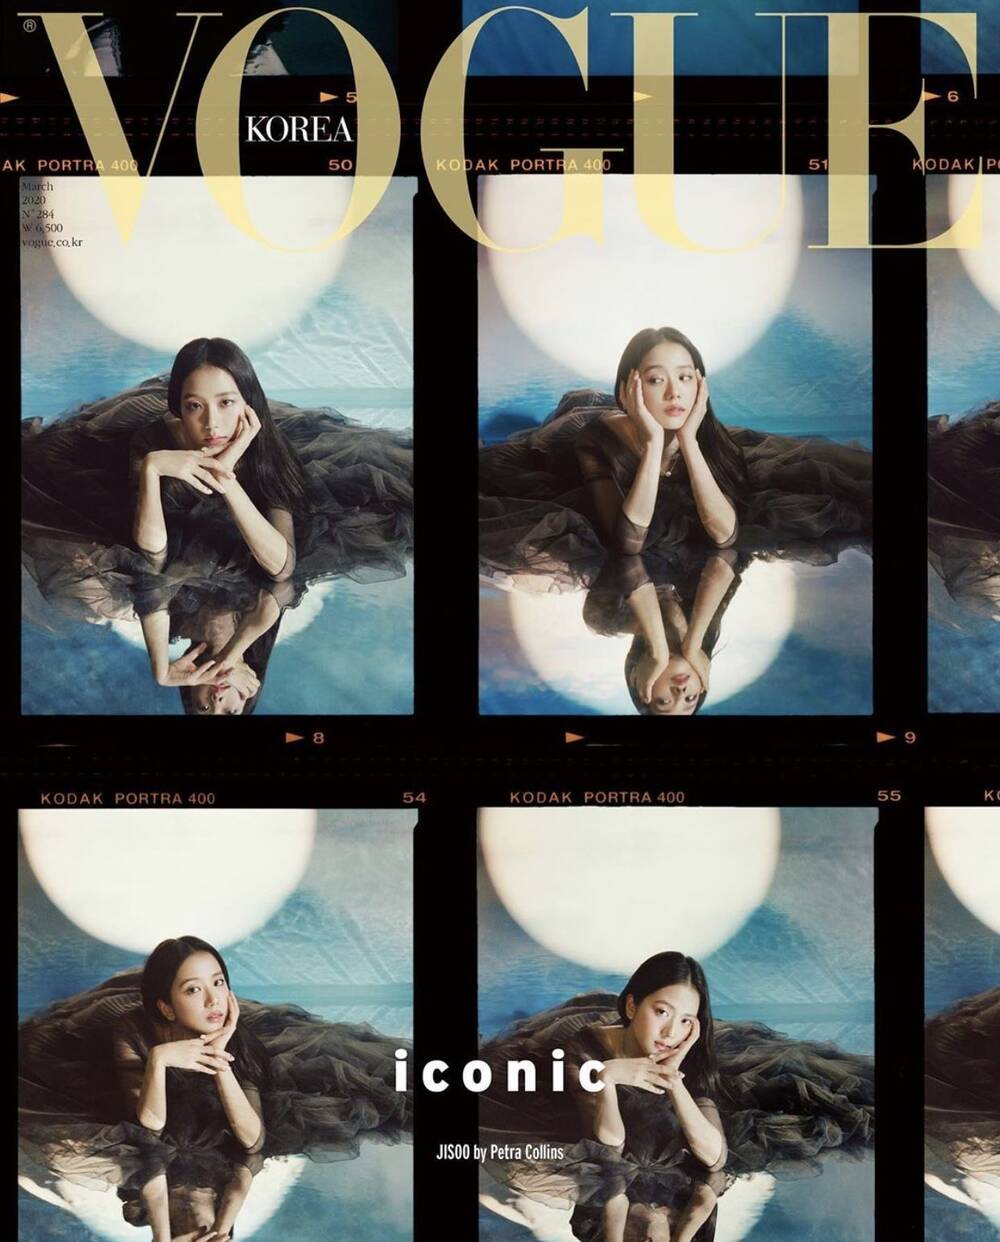 Trước đó, Jisoo đã từng lên bìa tạp chí Vogue Korea vào tháng 3/2020.